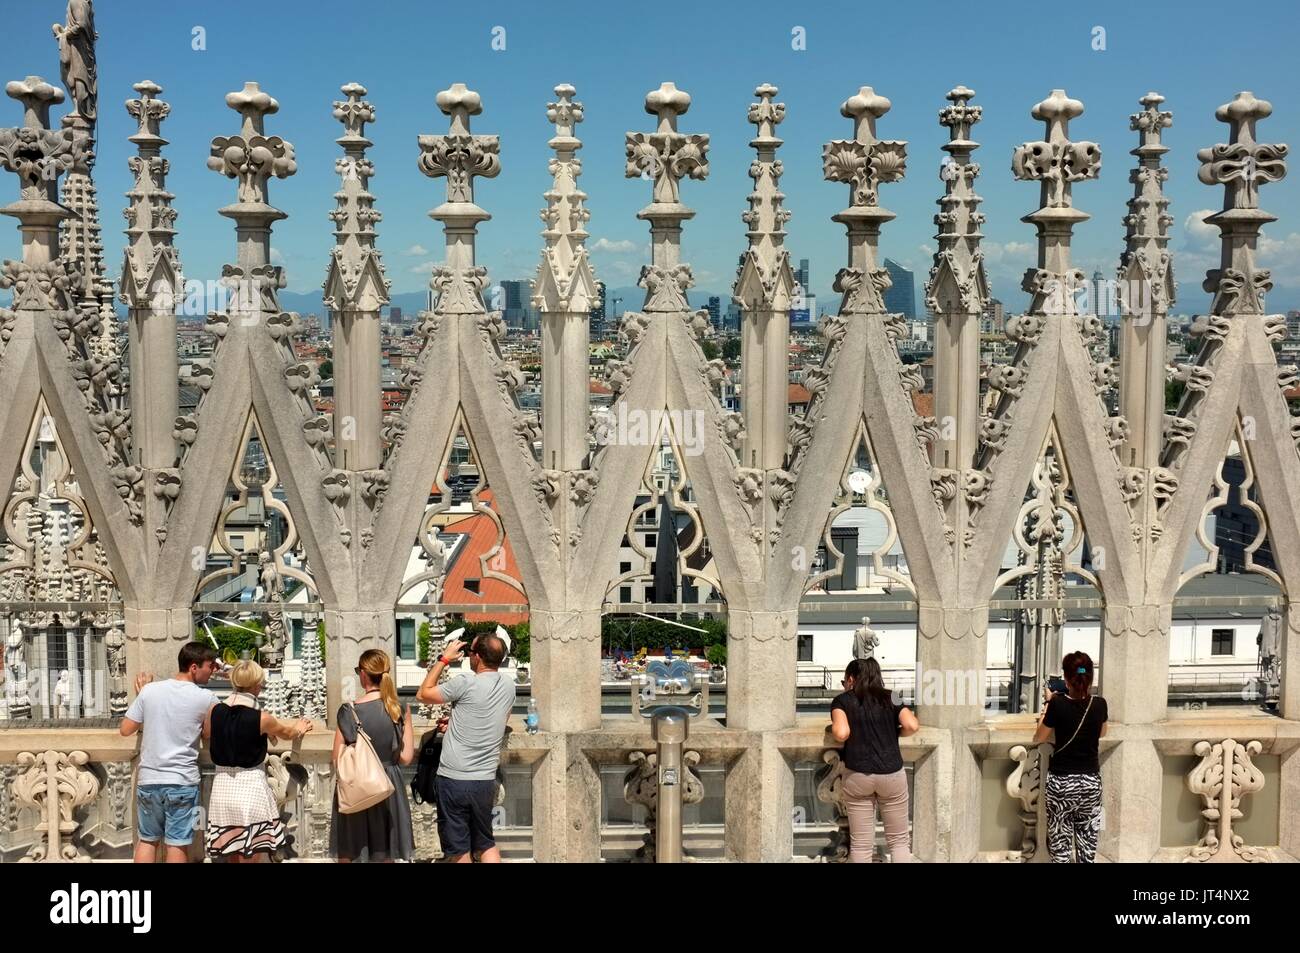 Les touristes sur la plate-forme panoramique au sommet du Duomo (cathédrale), de la Piazza del Duomo, Milan, Lombardie, Italie, juillet 2017 Banque D'Images